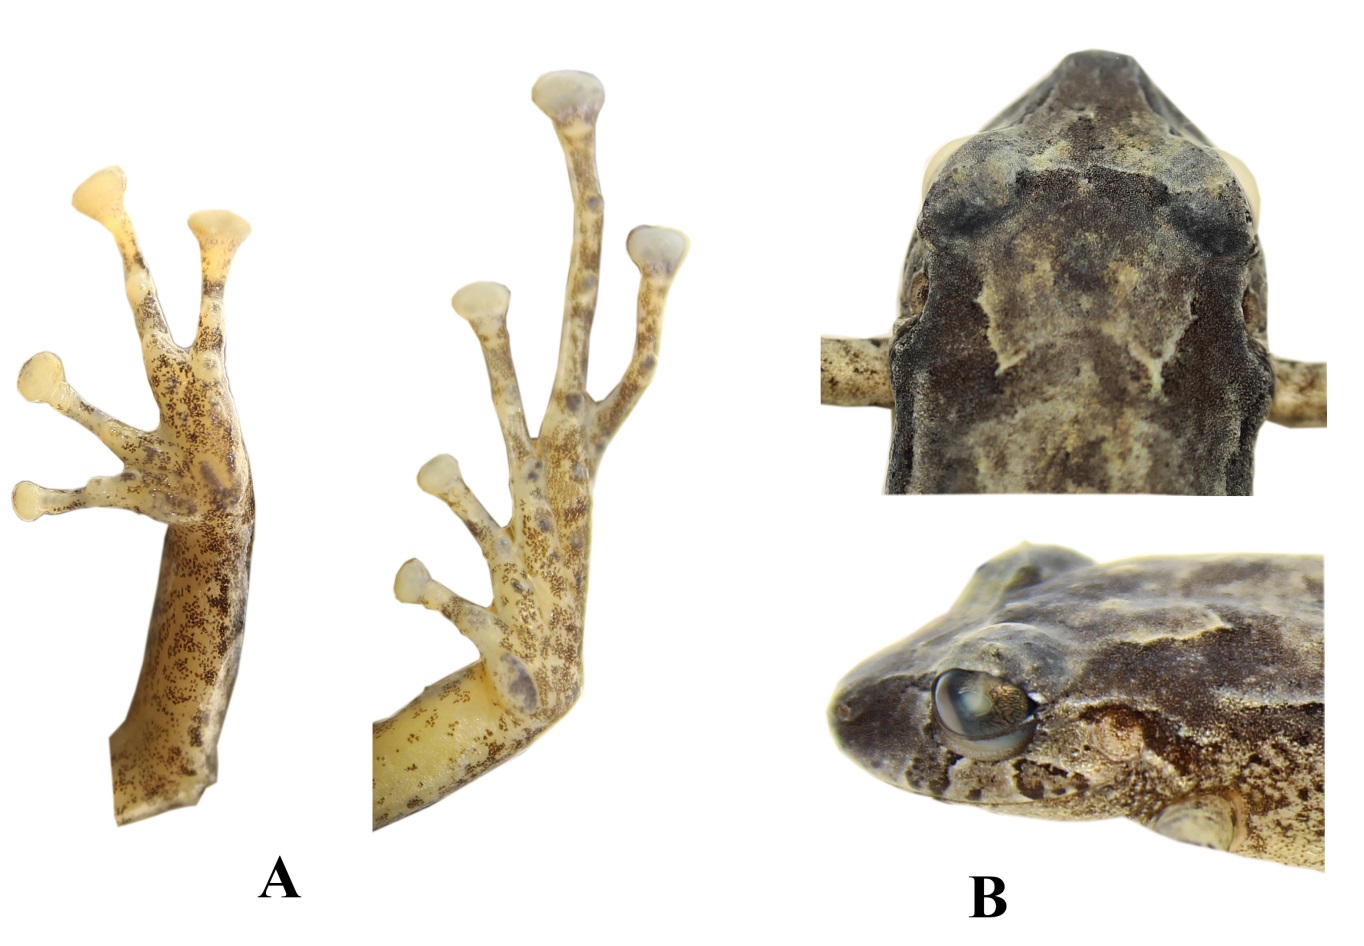 Pristimantis hampatusami sp. nov., DHMECN 11413, hembra, holotipo. (A) Detalle de las extremidades; (B)
Detalle de la cabeza en vista de dorsal y de perfil. (CRP).